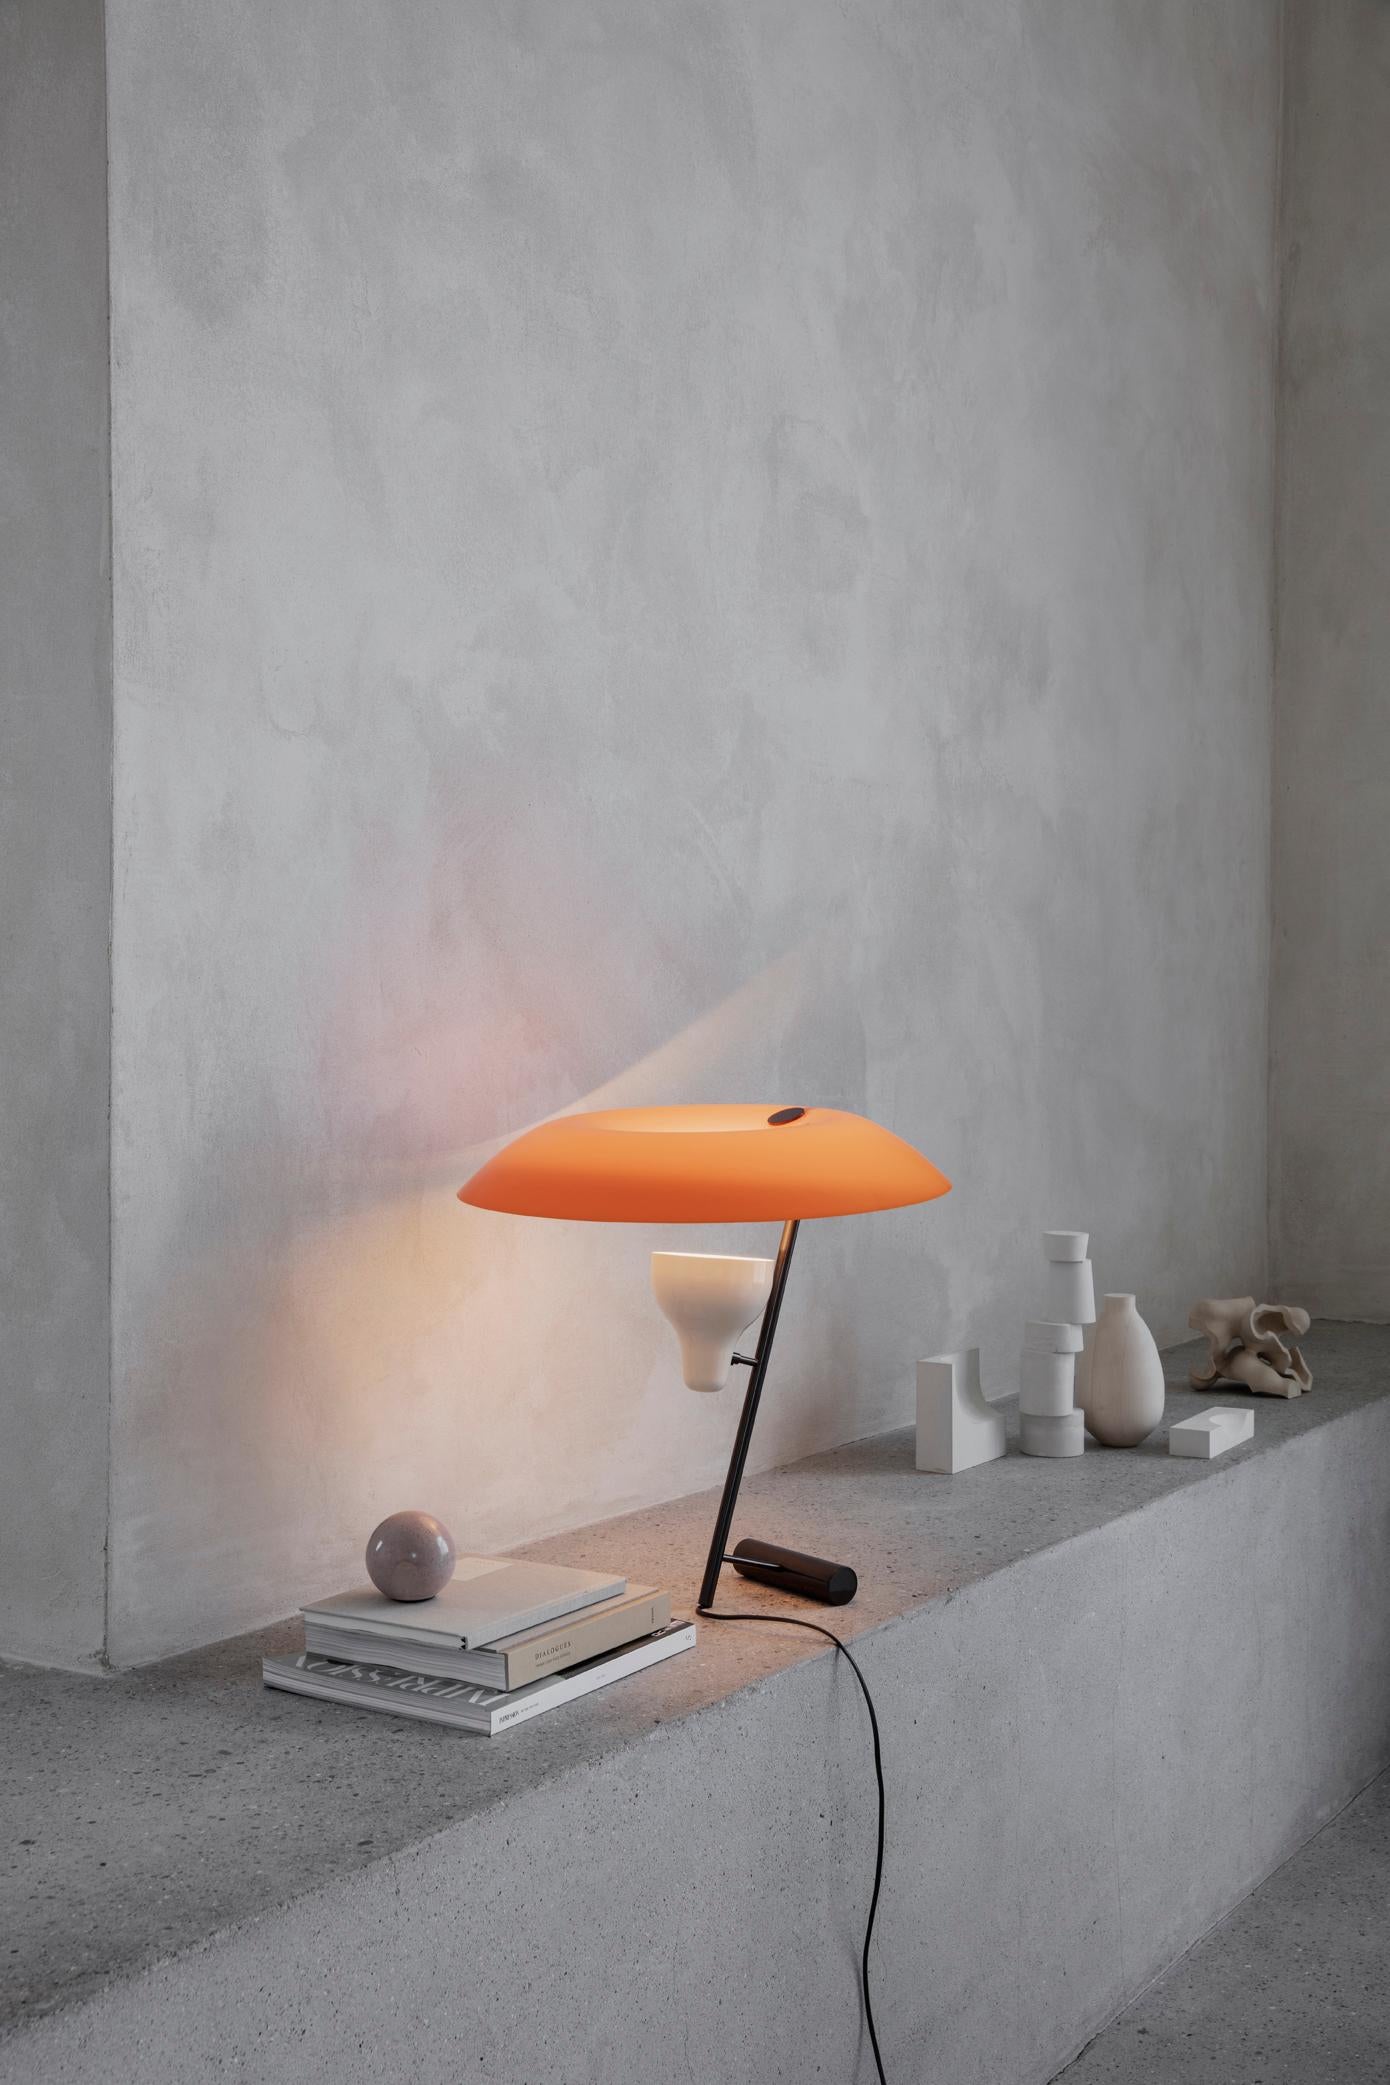 Modèle 548
Design par Gino Sarfatti
La lampe de table conçue en 1951 est une étude de l'équilibre et de la réflexion de la lumière à travers un écran, un thème récurrent dans l'œuvre de Gino Sarfatti. Le modèle 548 fournit une lumière à la fois